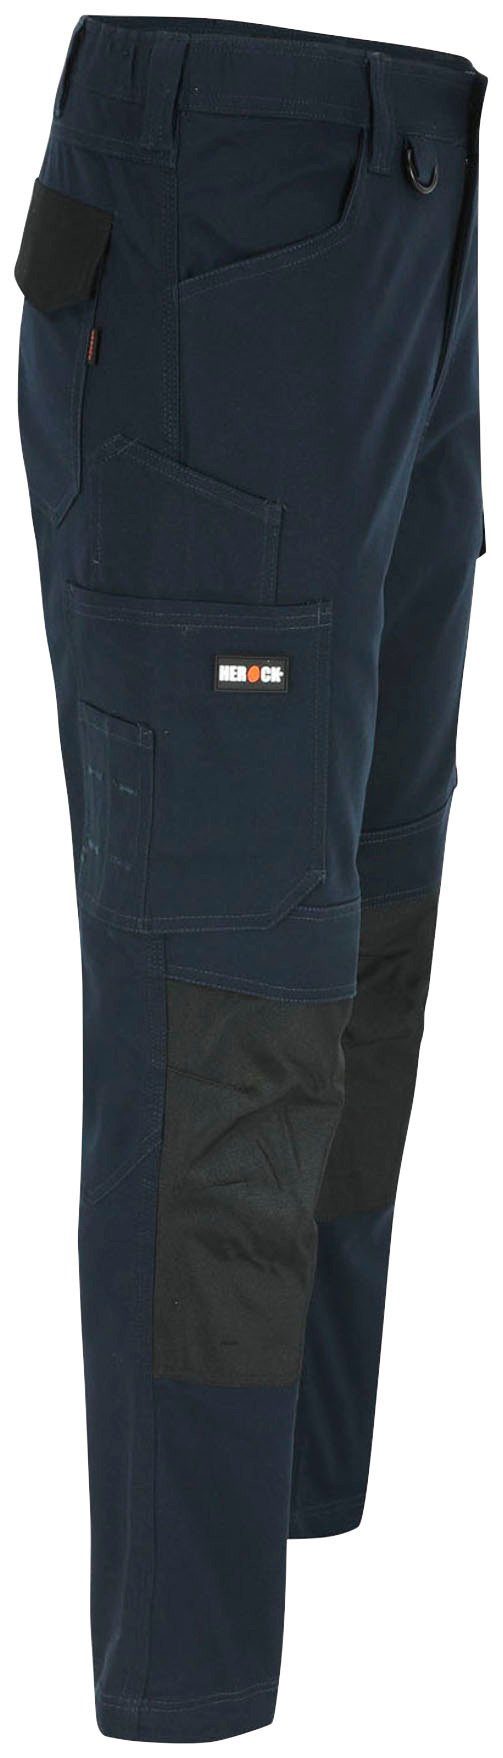 Herock Arbeitshose DERO Slim Fit Multi-Pocket, wasserabweisend marine Passform, 2-Wege-Stretch